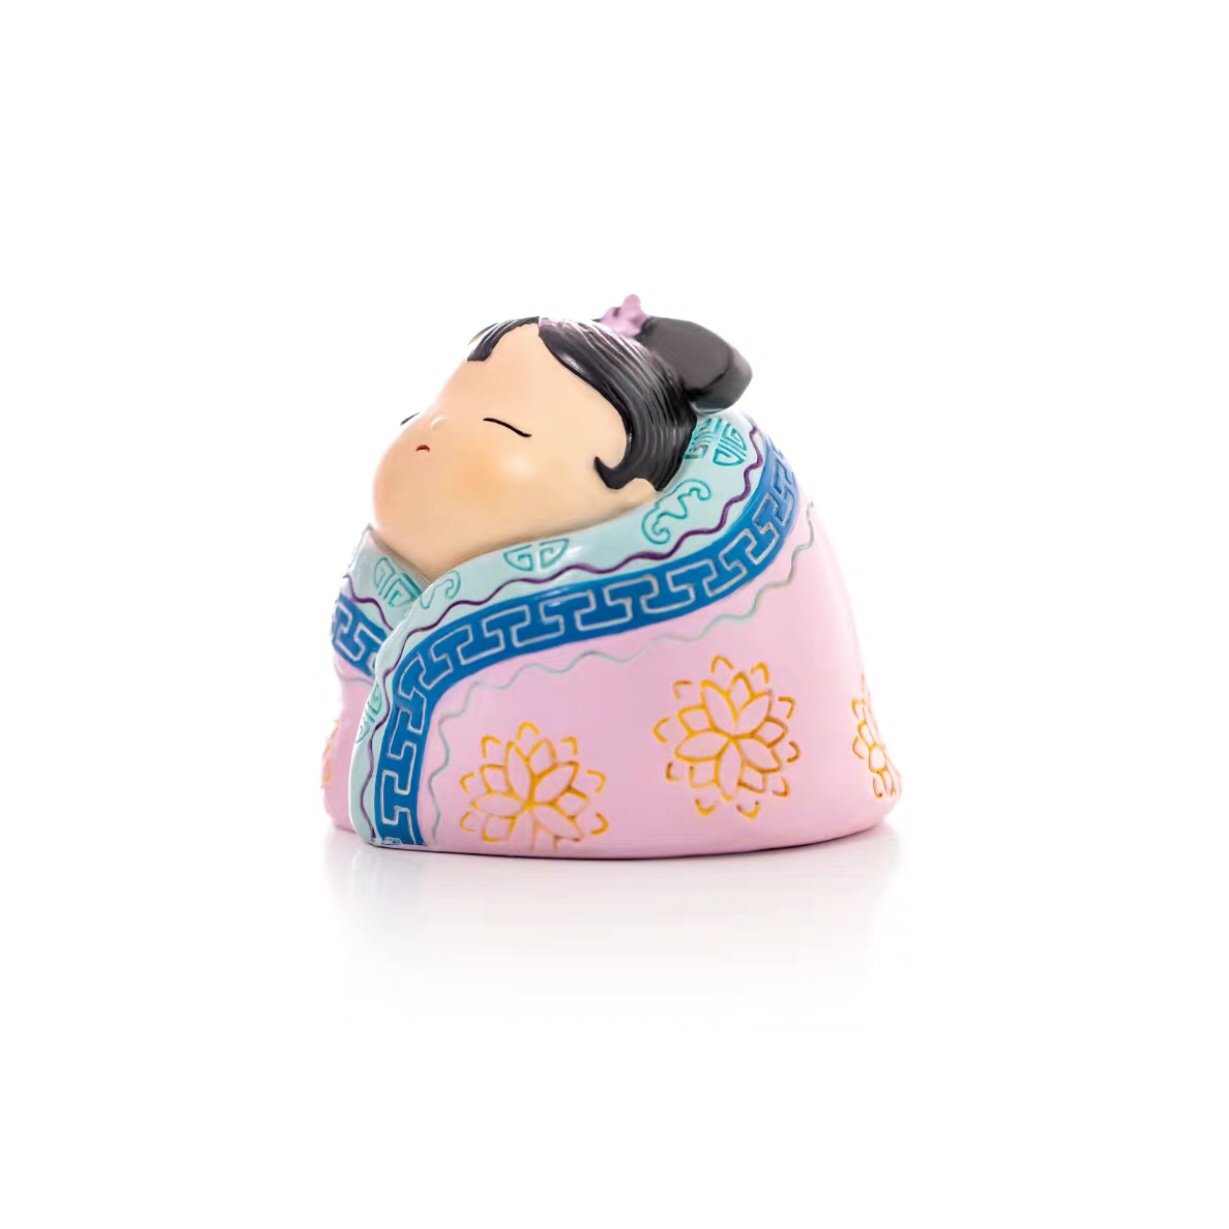 新故宫格格的日常玩具 桌面创意家居饰品摆件 公主睡不够吃得香礼